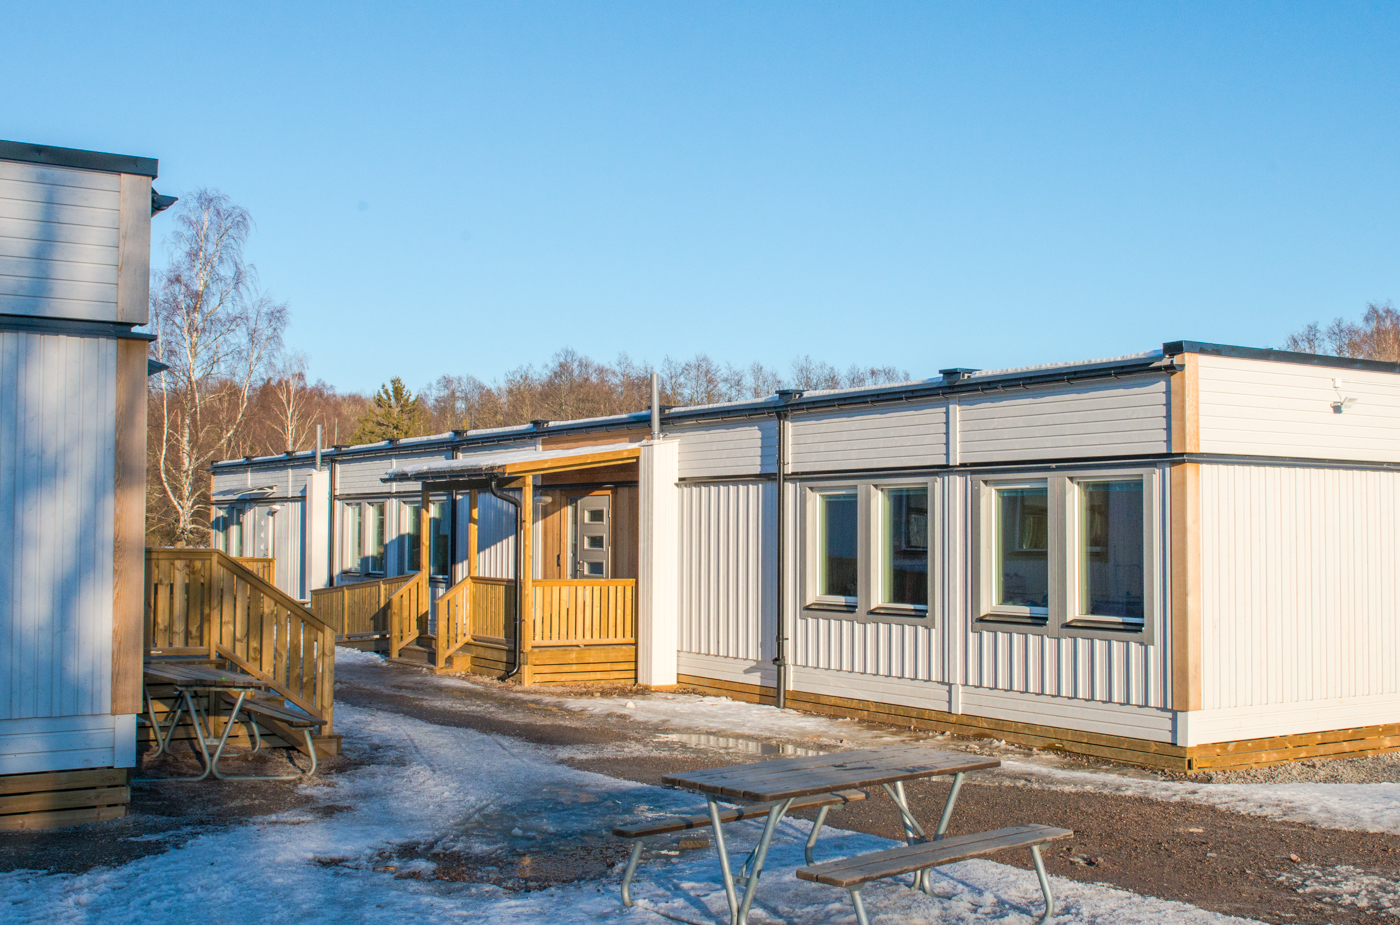 Irstaskolan 10 km öster om Västerås centrum fick under sommaren 2017 två nya skollokaler som tillsammans rymmer hela sju nya klassrum.